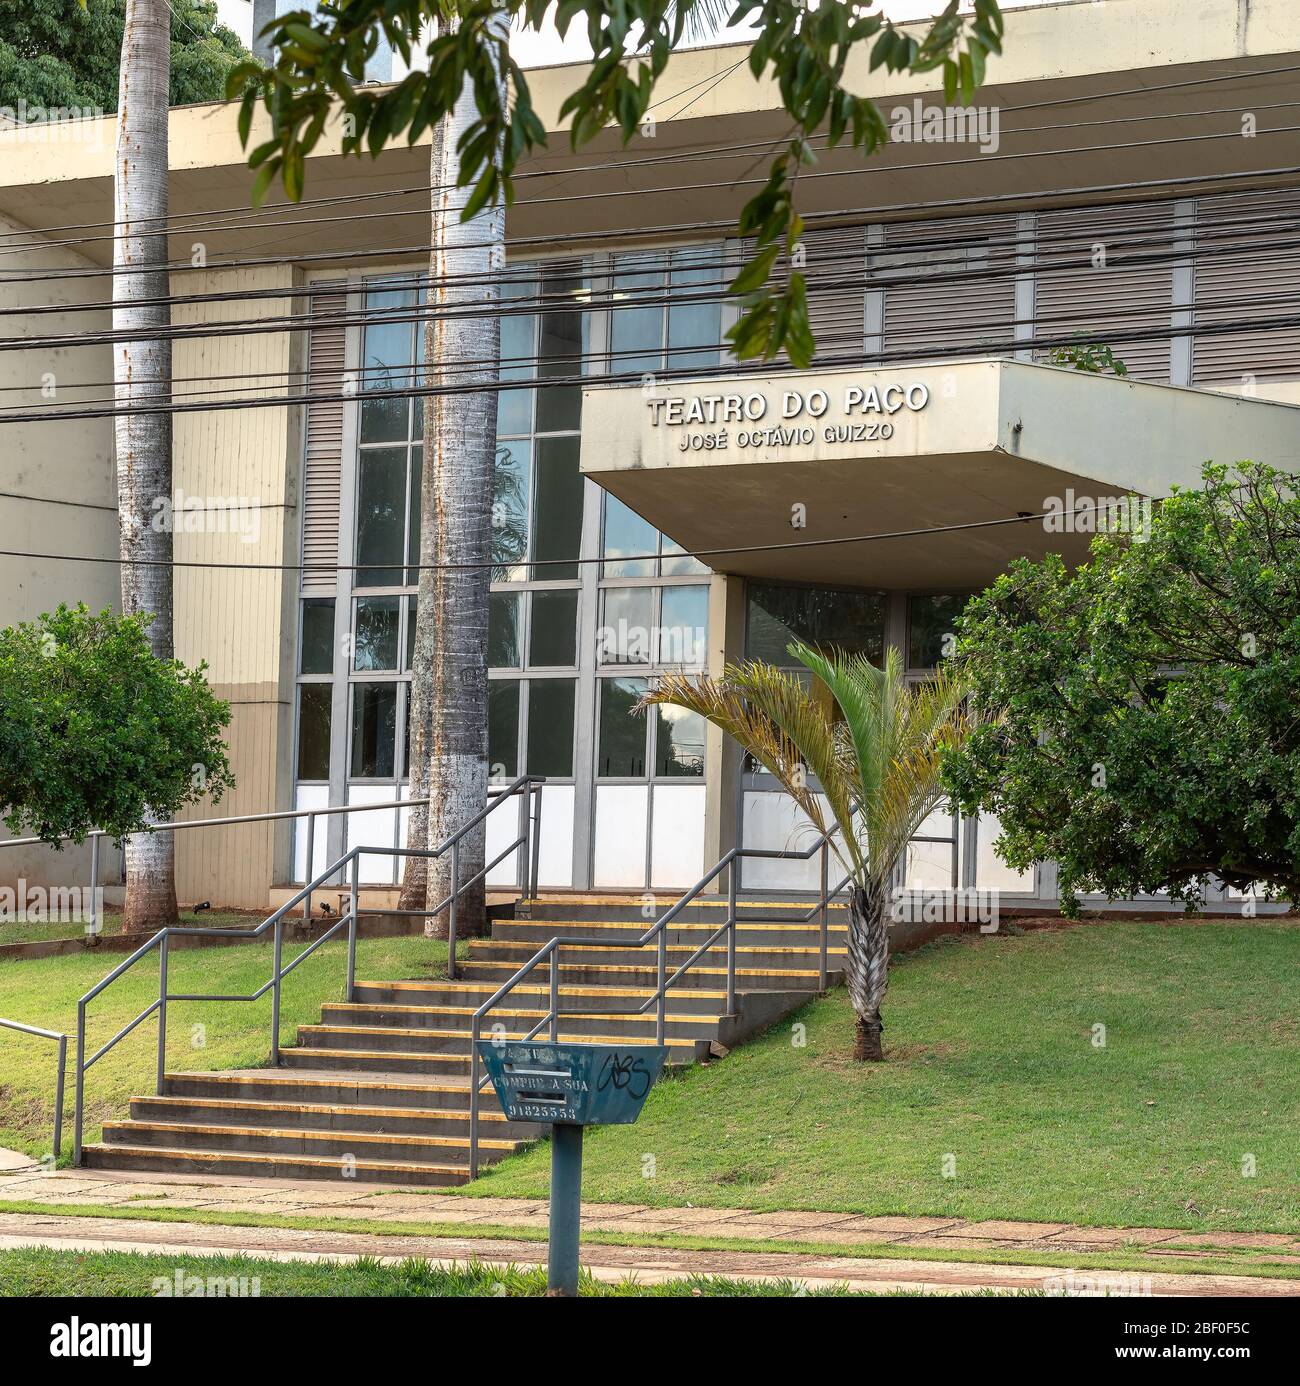 Campo Grande - MS, Brasilien - 30. März 2020: Fassade des alten Gebäudes des Teatro do Paco - Jose Octavio Guizzo, Palast Theater in englisch. Stockfoto